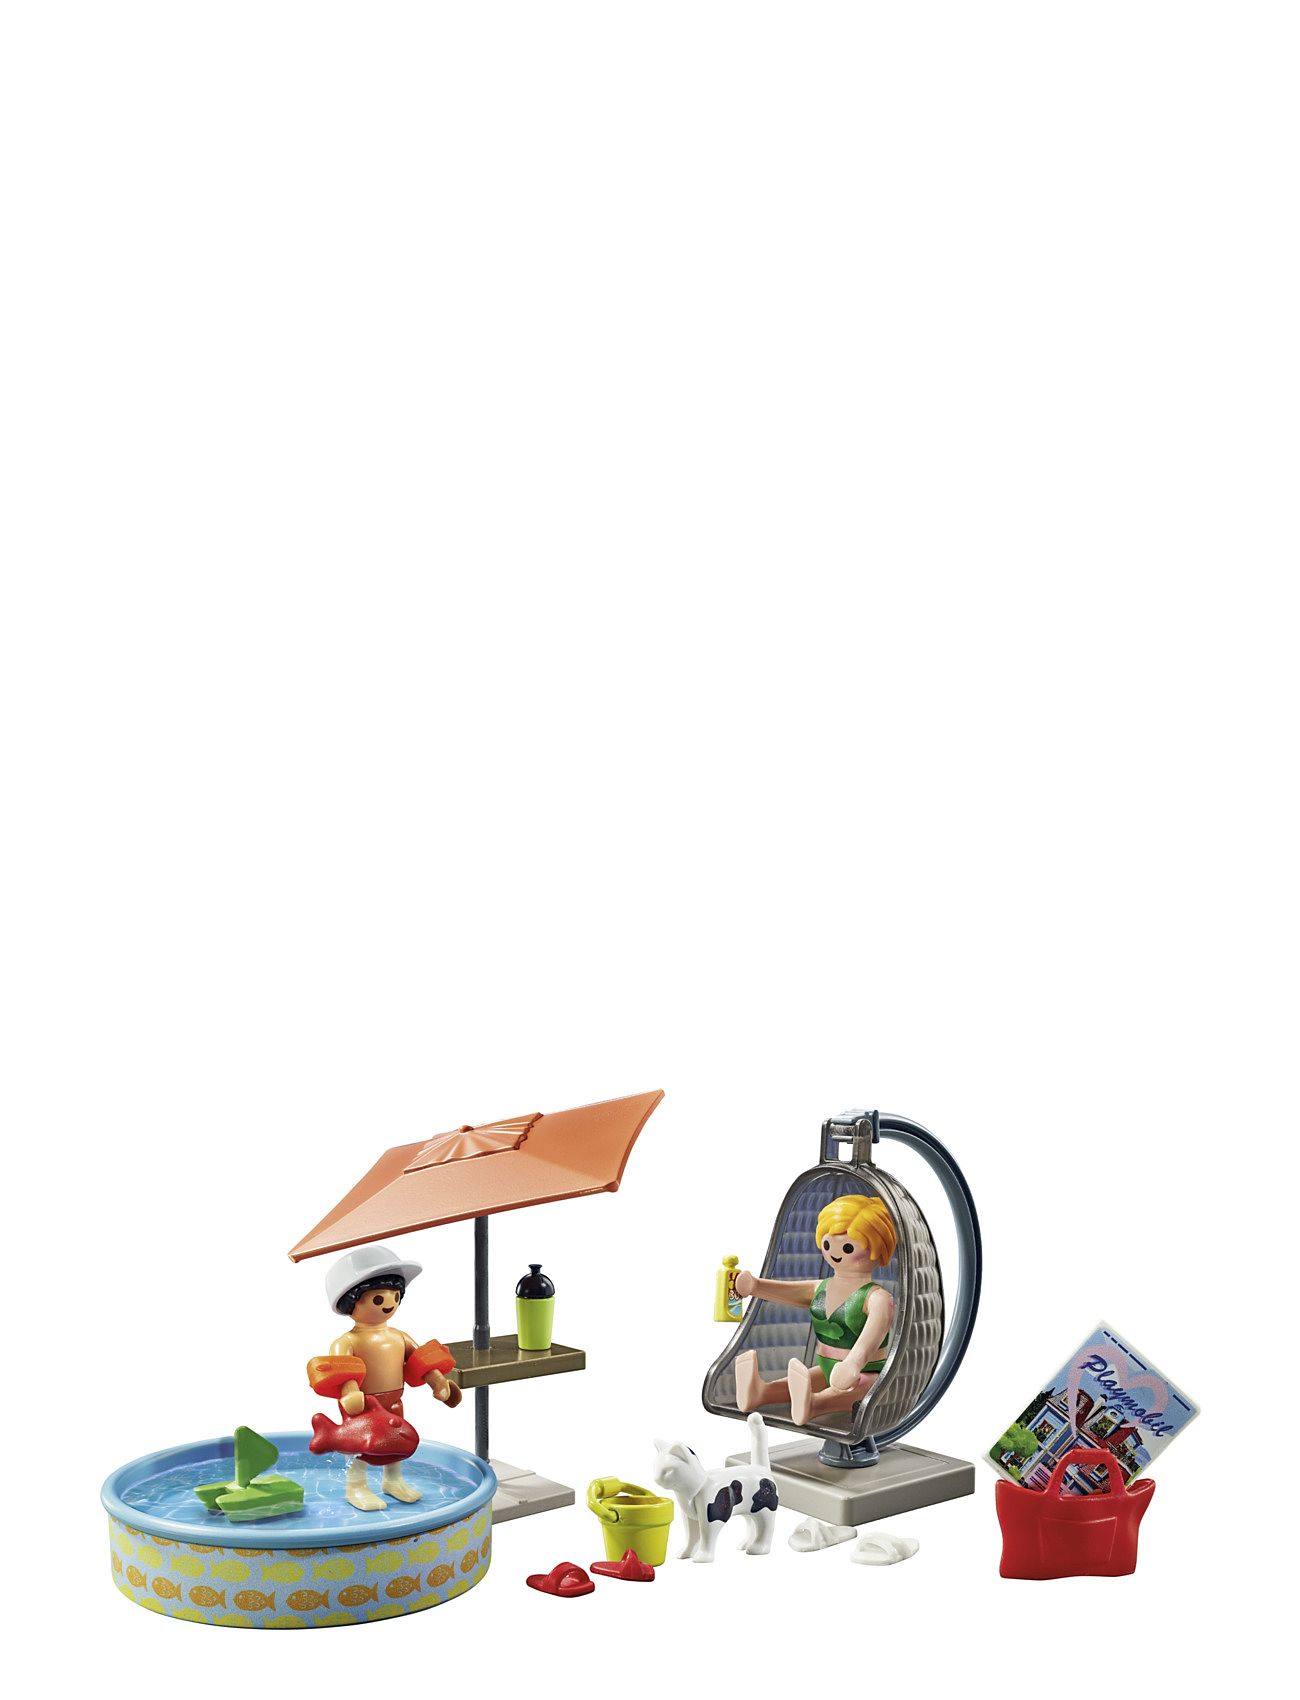 Playmobil Starter Packs Plaskesjov Derhjemme - 71476 Toys Playmobil Toys Playmobil Starter Packs Multi/patterned PLAYMOBIL